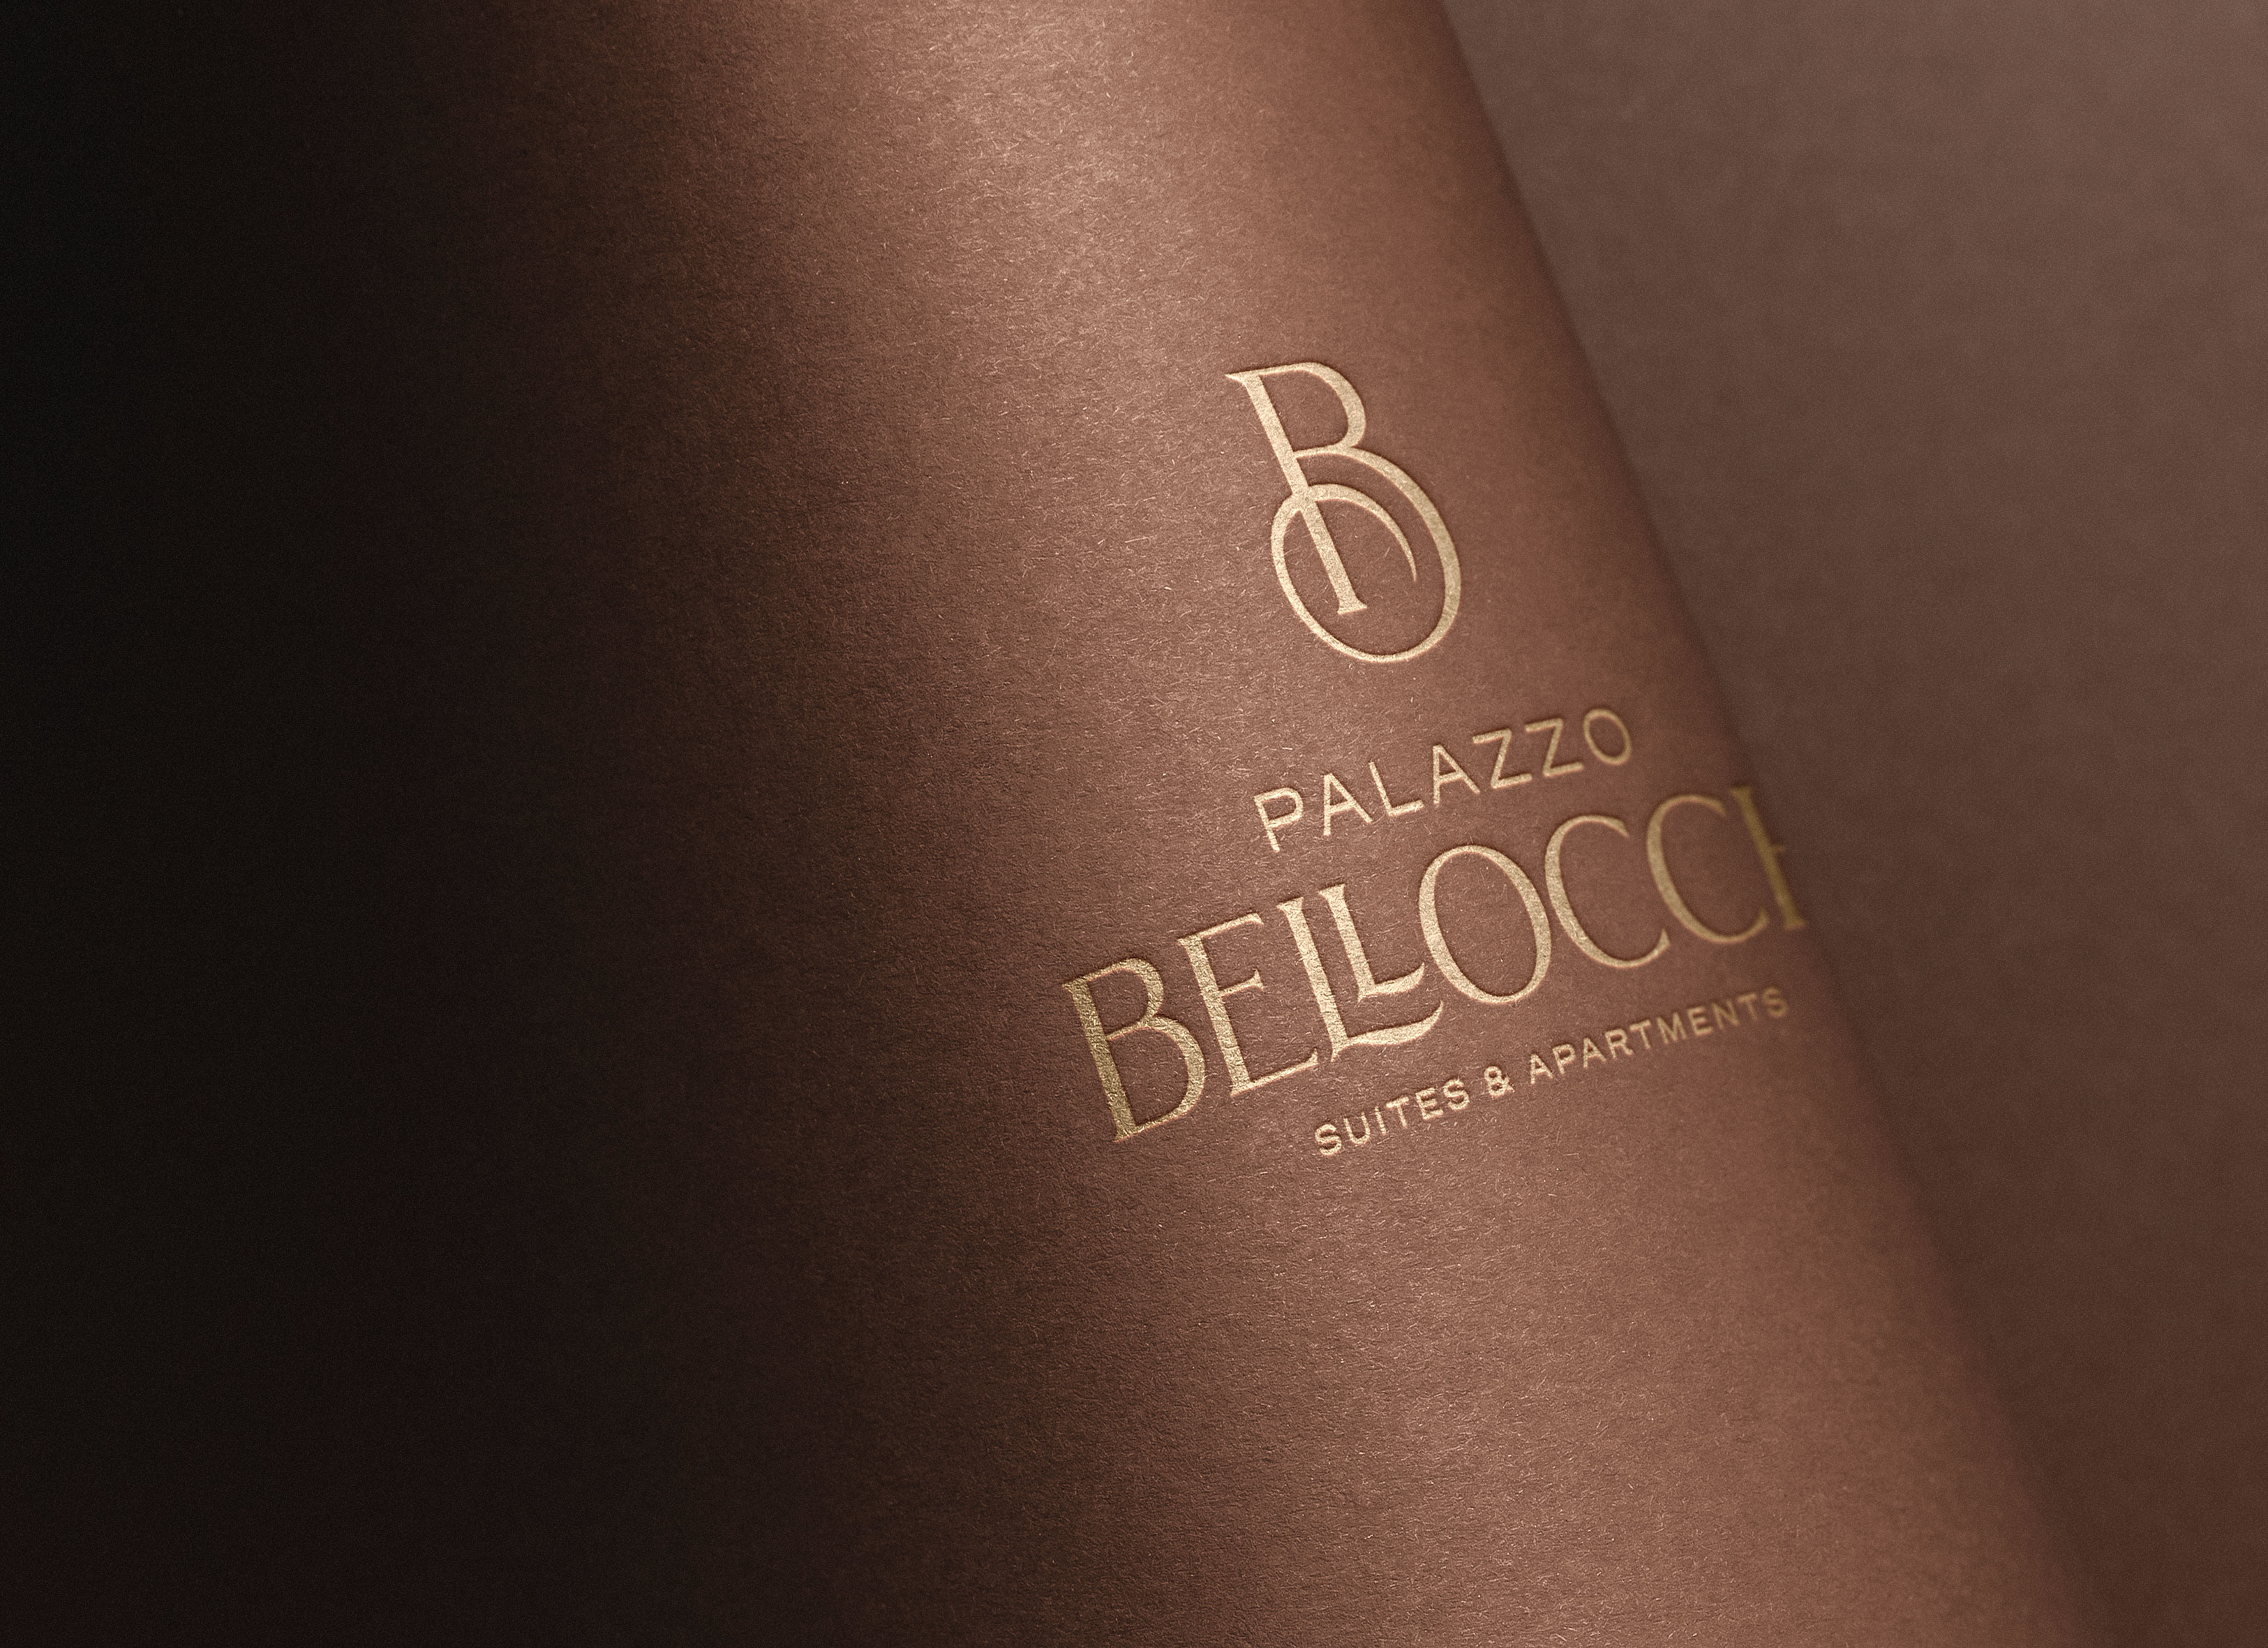 palazzo bellocchi_logo_brand identity